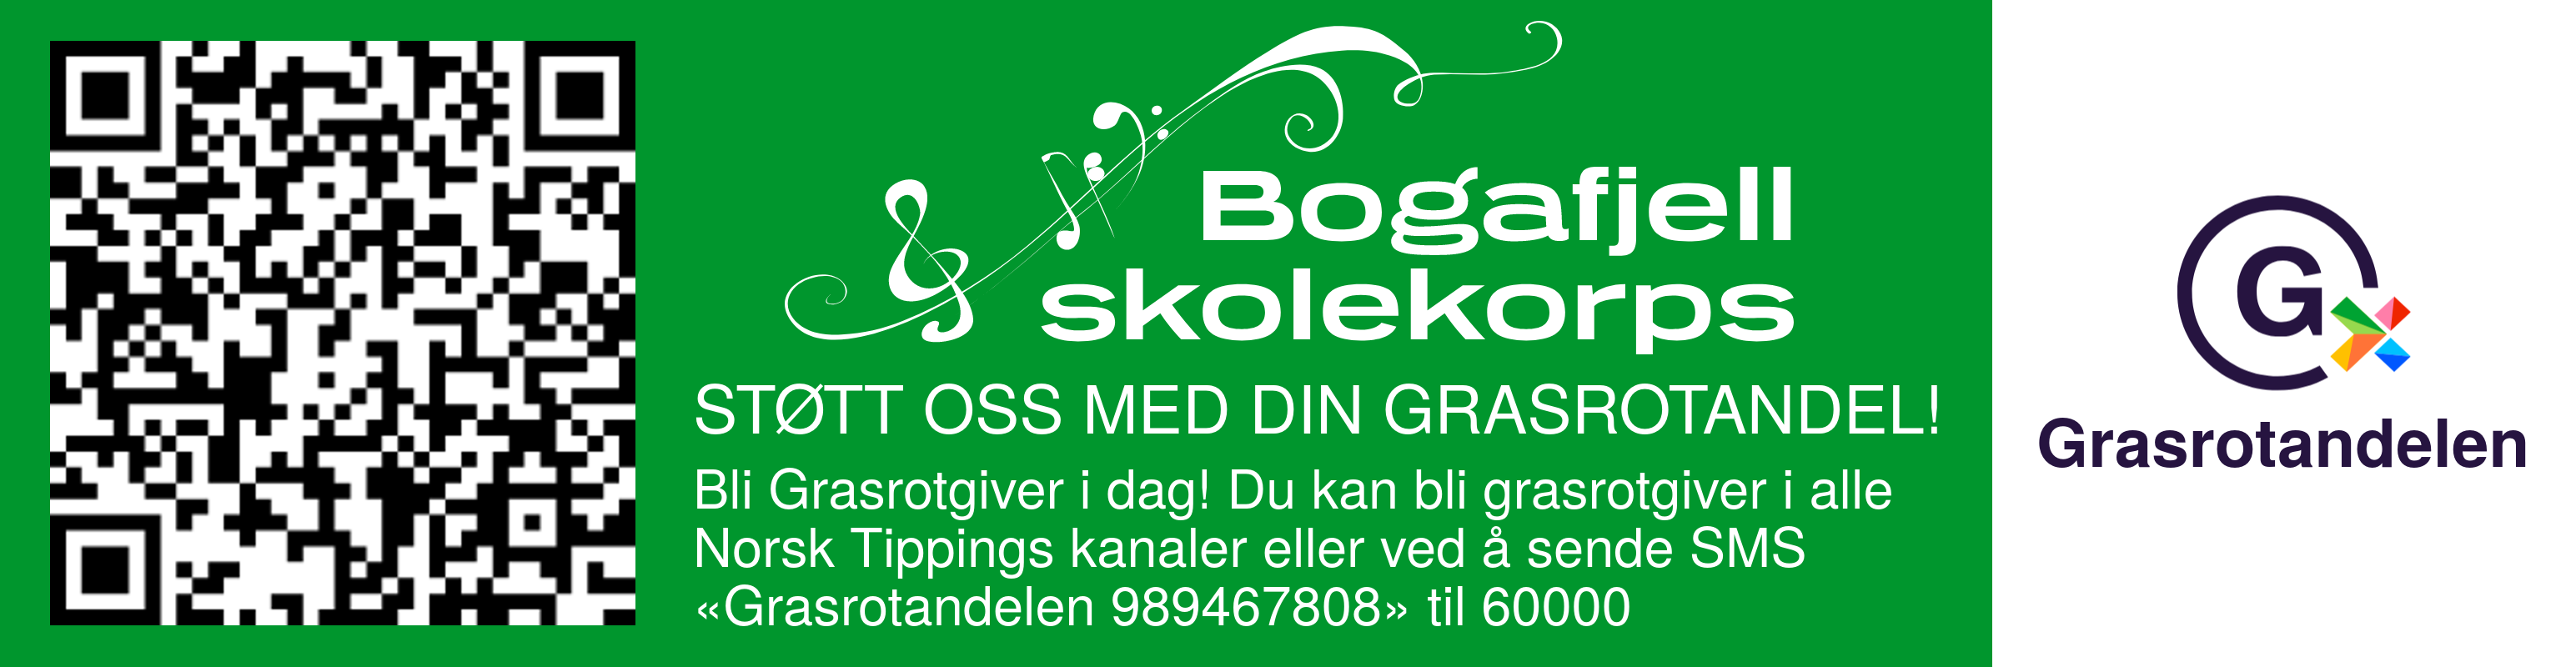 Send SMS «Grasrotandelen 989467808» til nummer 60000 hvis du vil støtte Bogafjell Skolekorps med din grasrotandel når du spiller hos Norsk Tipping